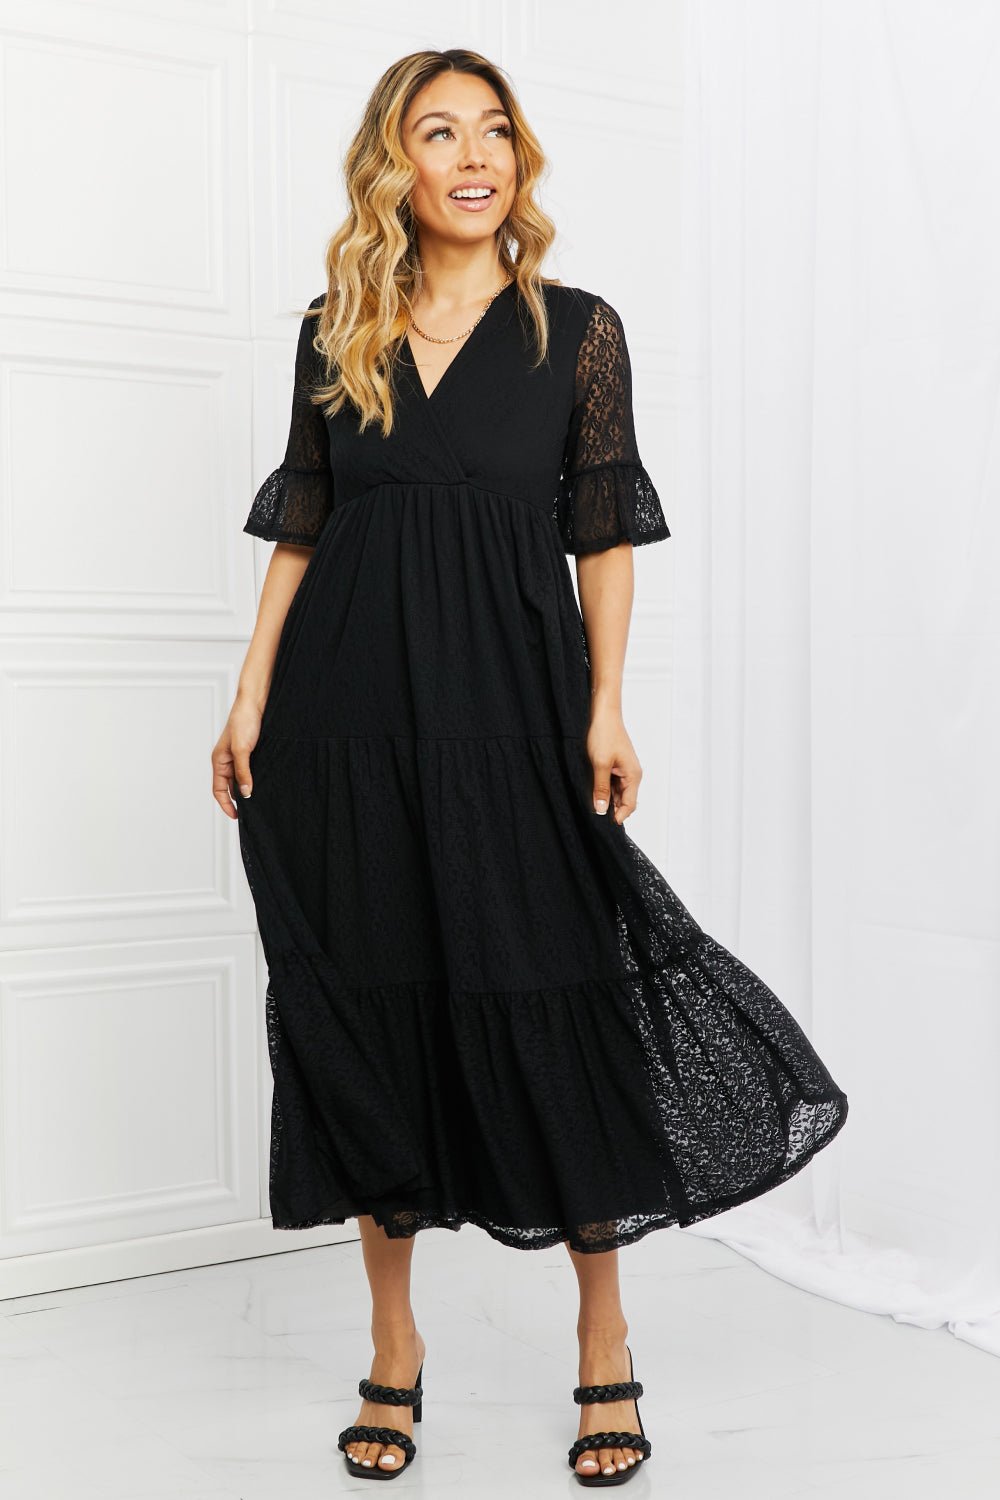 Lace Tiered Midi Dress in BlackMidi DressP & Rose